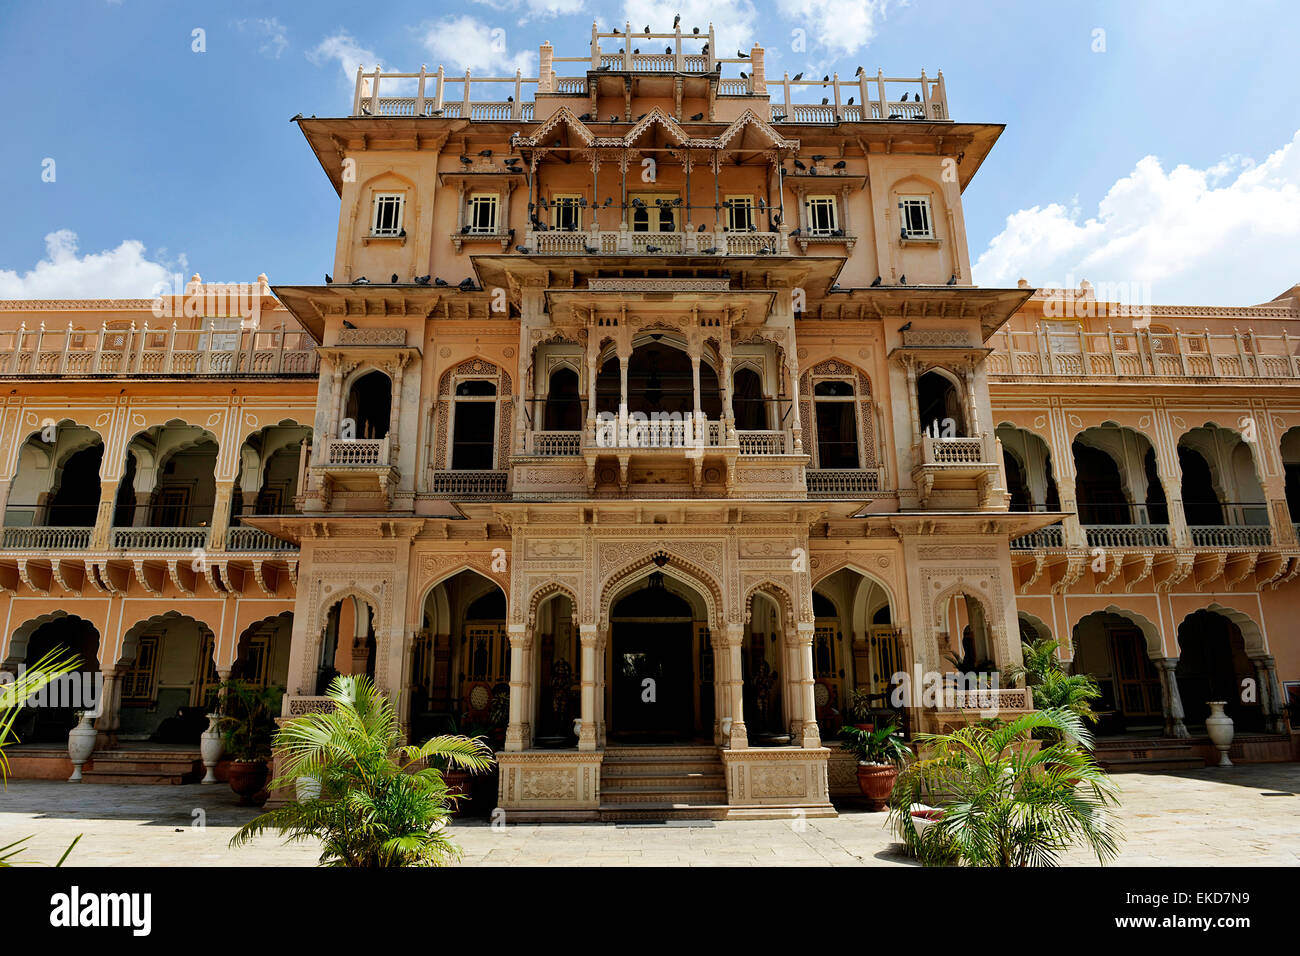 Chomu Palace Hotel, Rajasthan, India Stock Photo